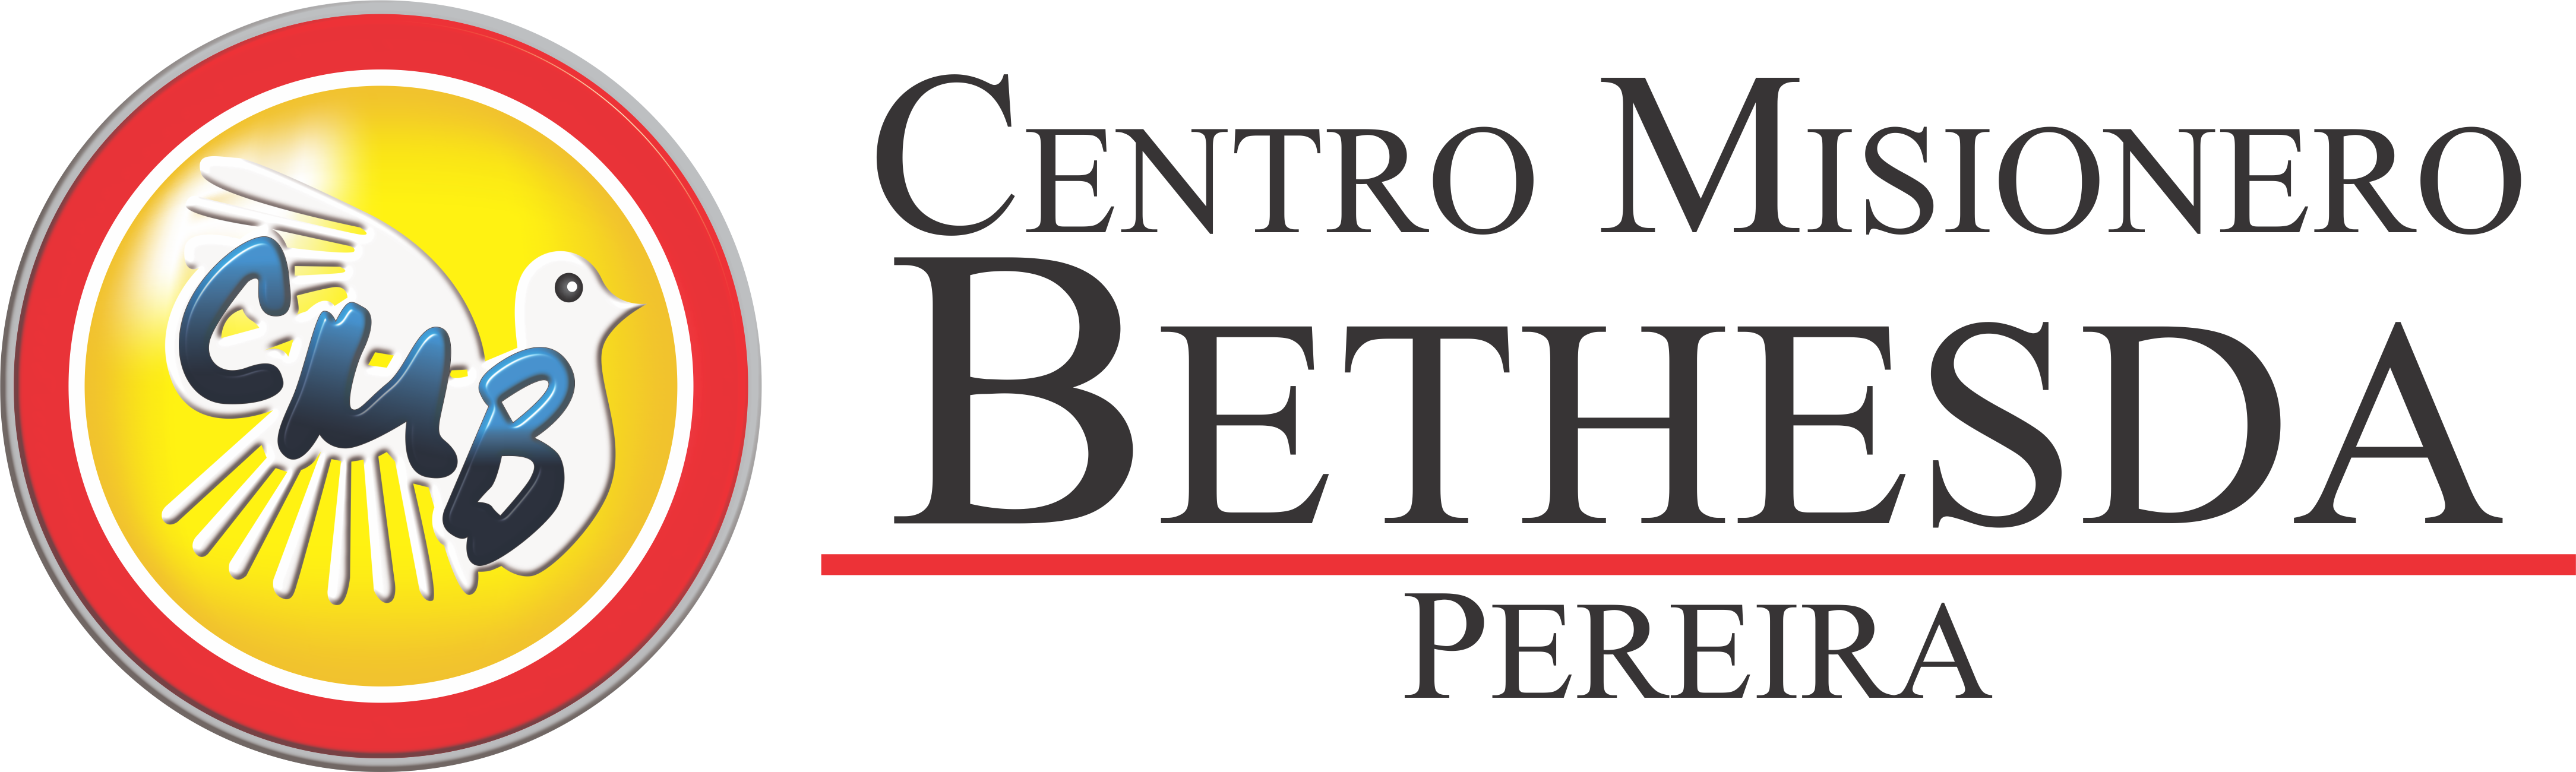 Iglesia Cristiana Centro Misionero Bethesda De Pereira - Centro Misionero Bethesda Clipart (4337x1300), Png Download